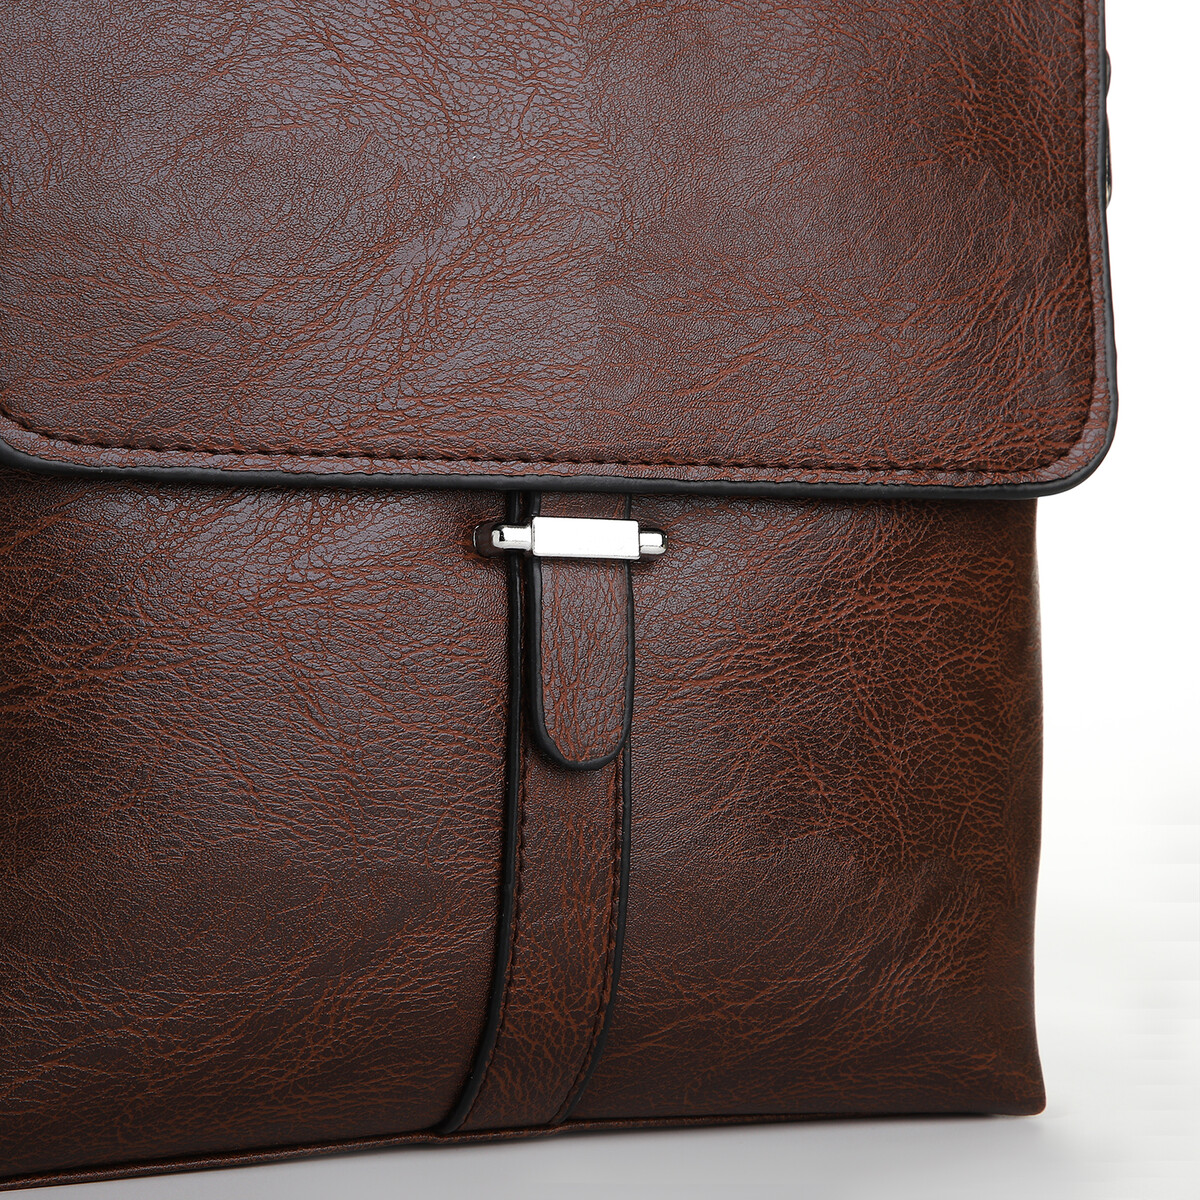 Сумка мужская на молнии, 2 наружных кармана, цвет коричневый No brand 05592924 планшет - фото 3